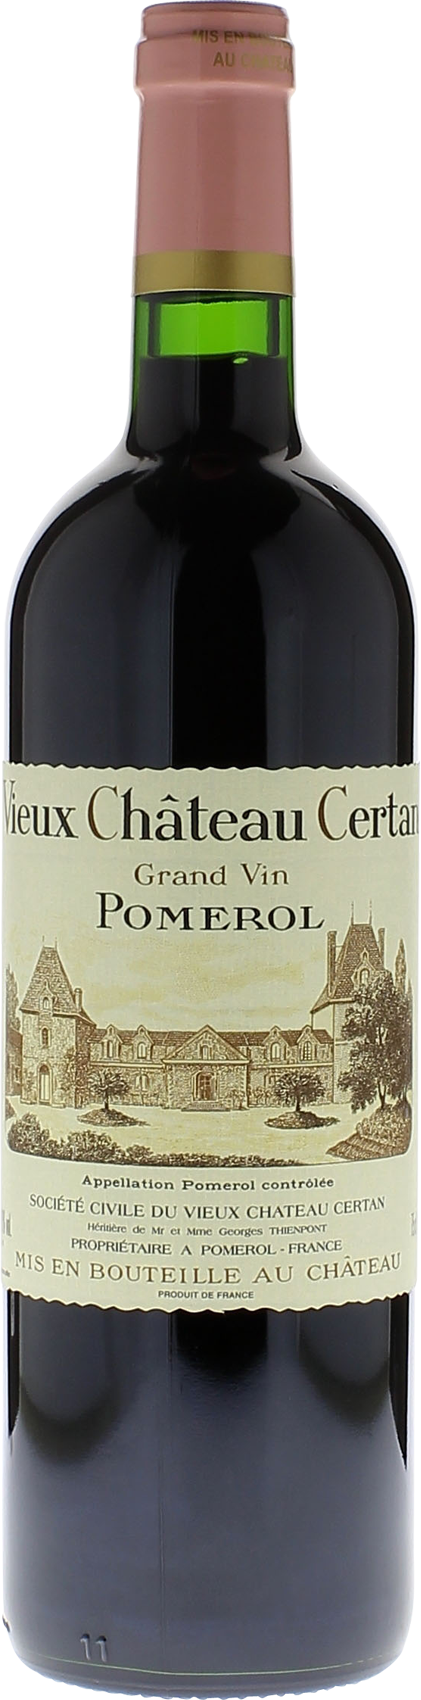 Vieux Château  Certan 2016 12 per case